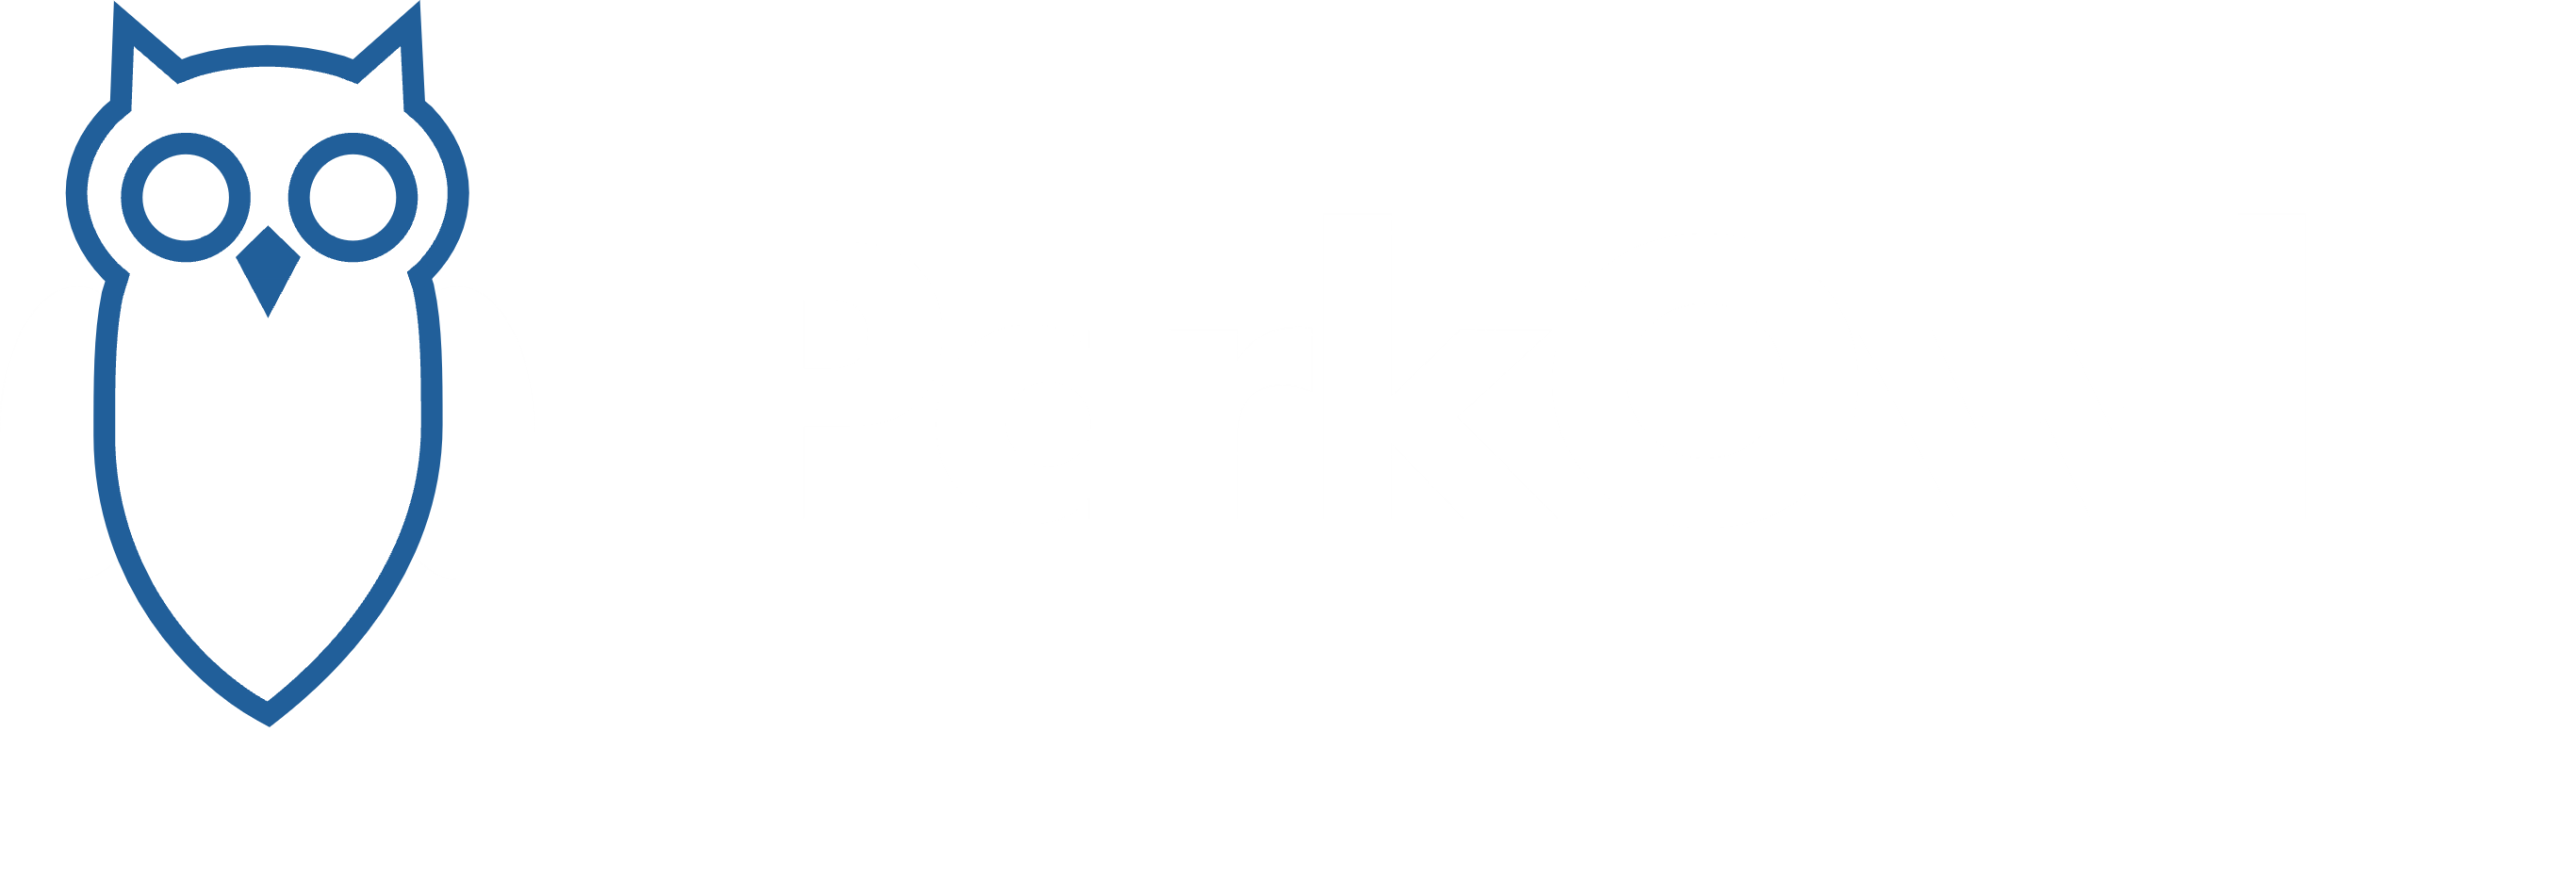 parkowl.se